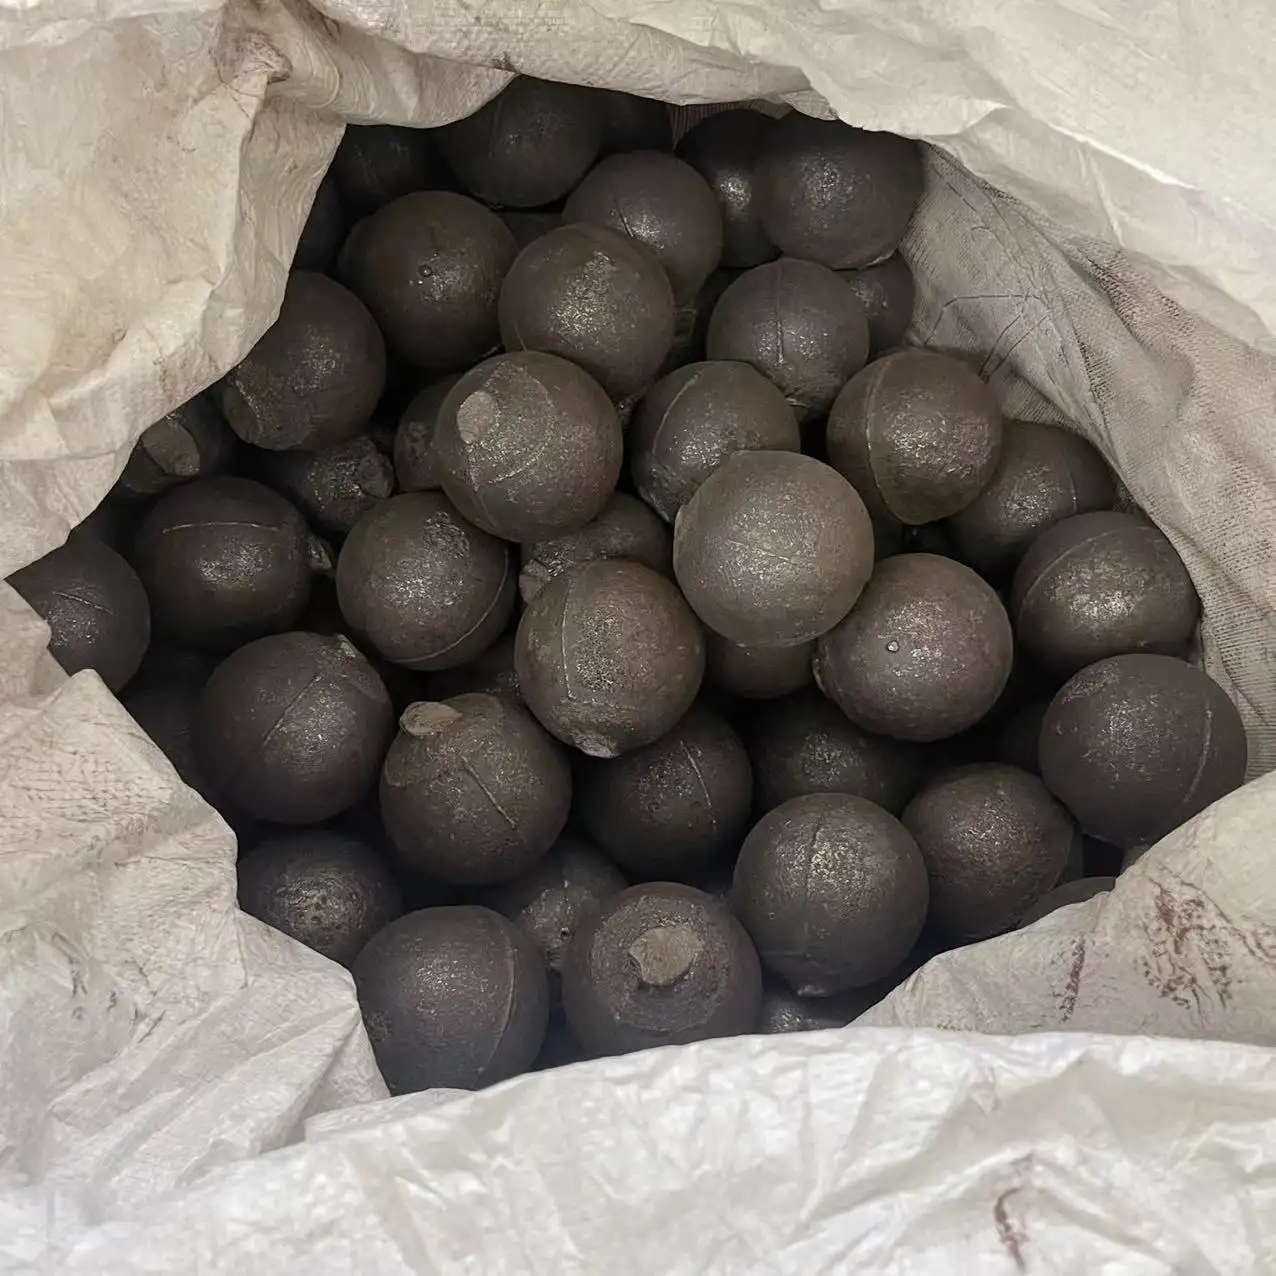 Boules de meulage de roche de pierre de minerai minier, billes d'acier forgées, boules moulées pour le broyeur à boulets de meulage minéral